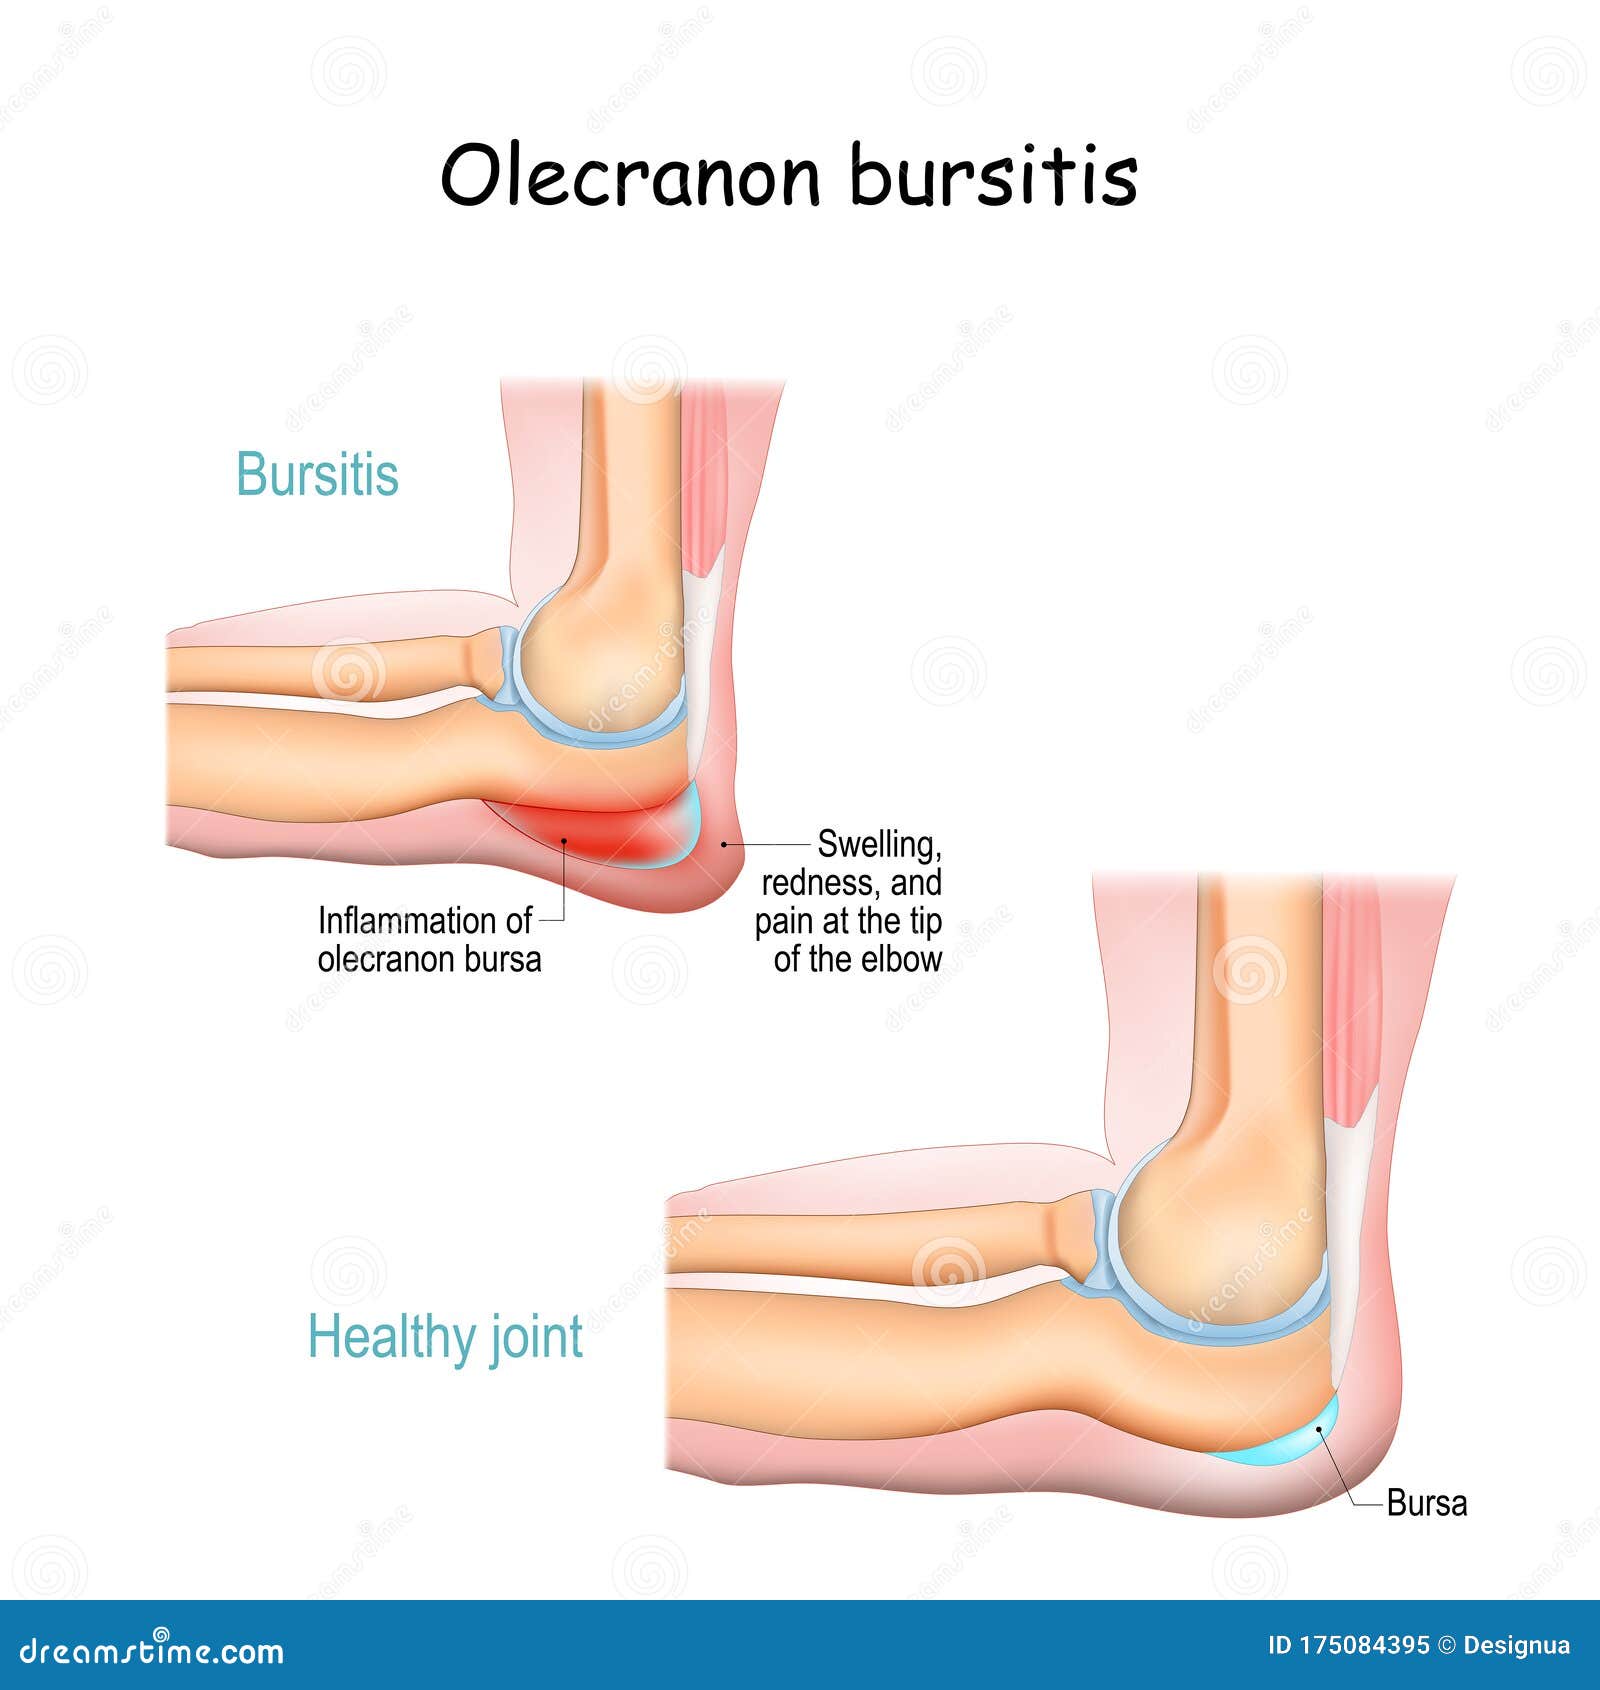 könyökízületi kezelési módszerek bursitis qigong az artrózis kezelésében